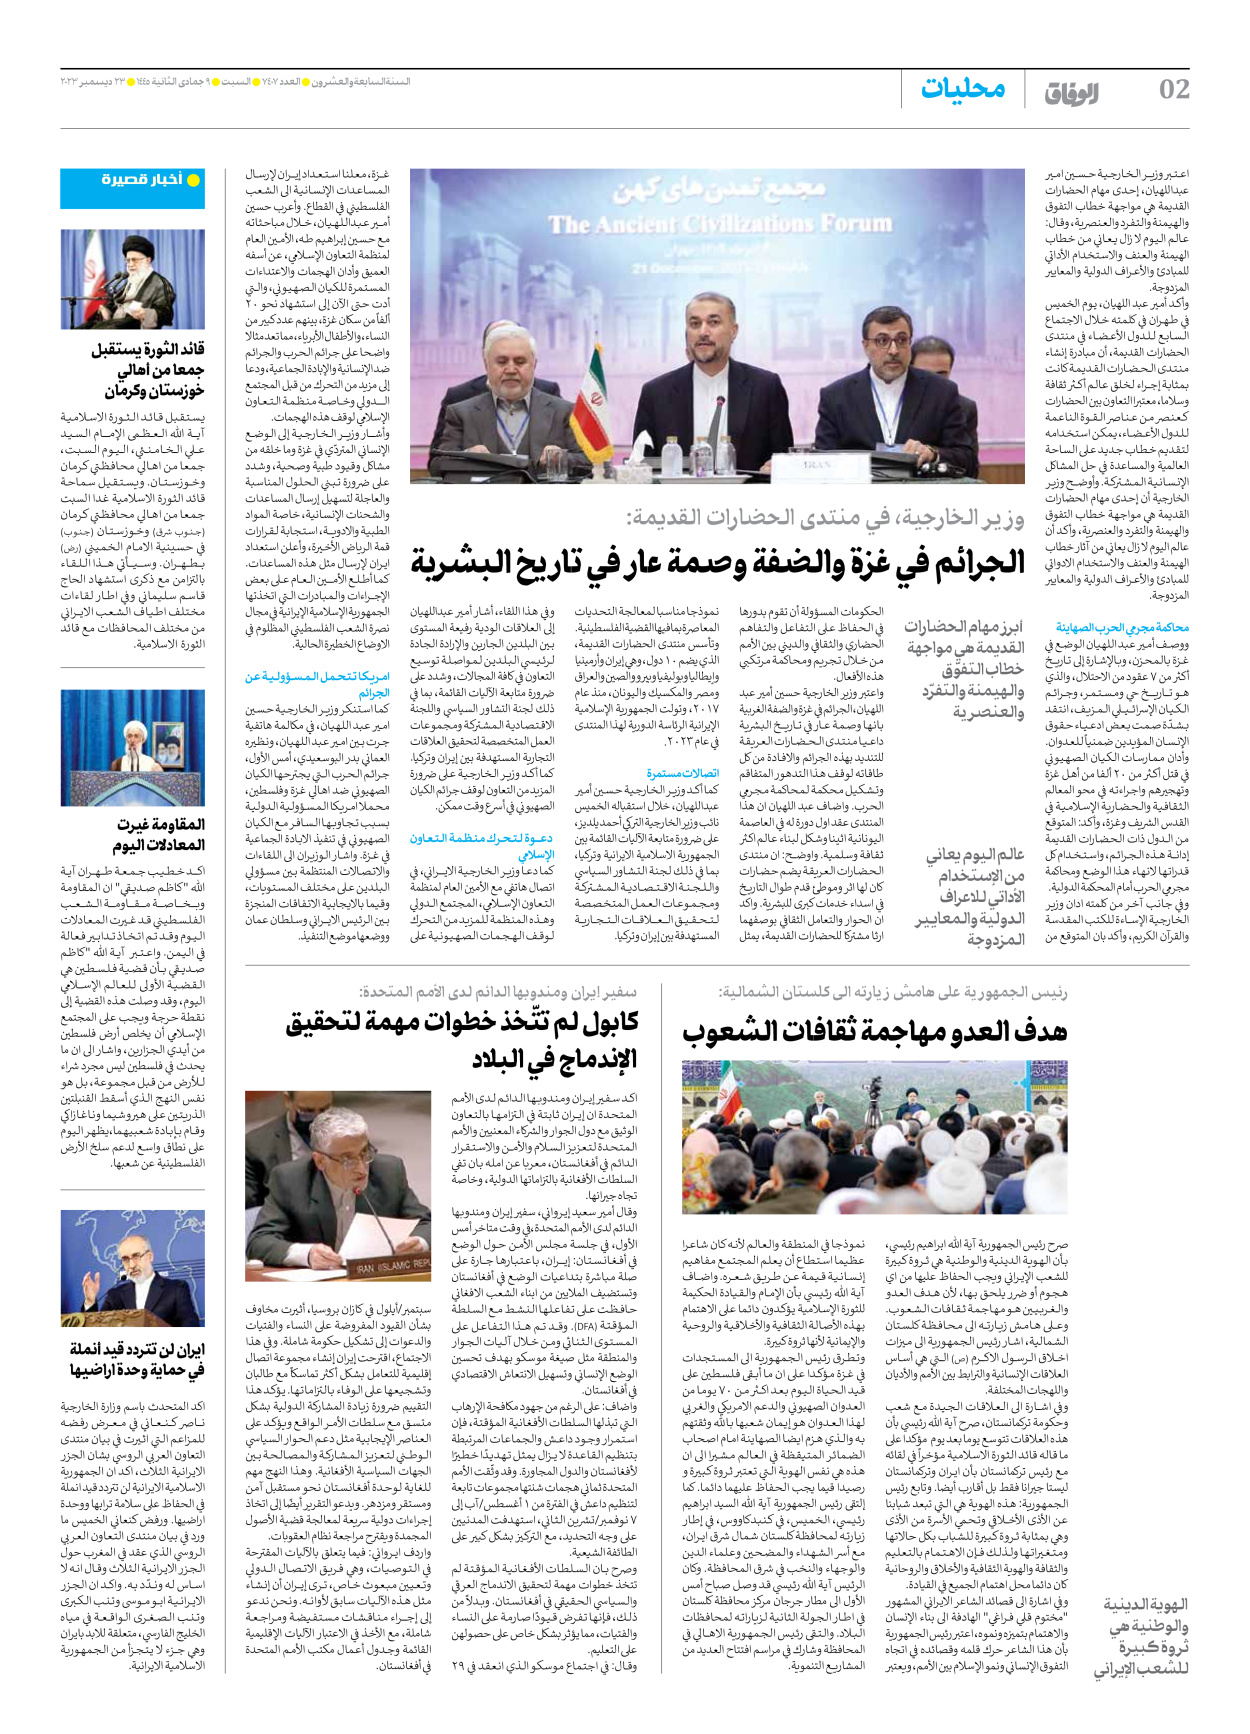 صحیفة ایران الدولیة الوفاق - العدد سبعة آلاف وأربعمائة وسبعة - ٢٣ ديسمبر ٢٠٢٣ - الصفحة ۲